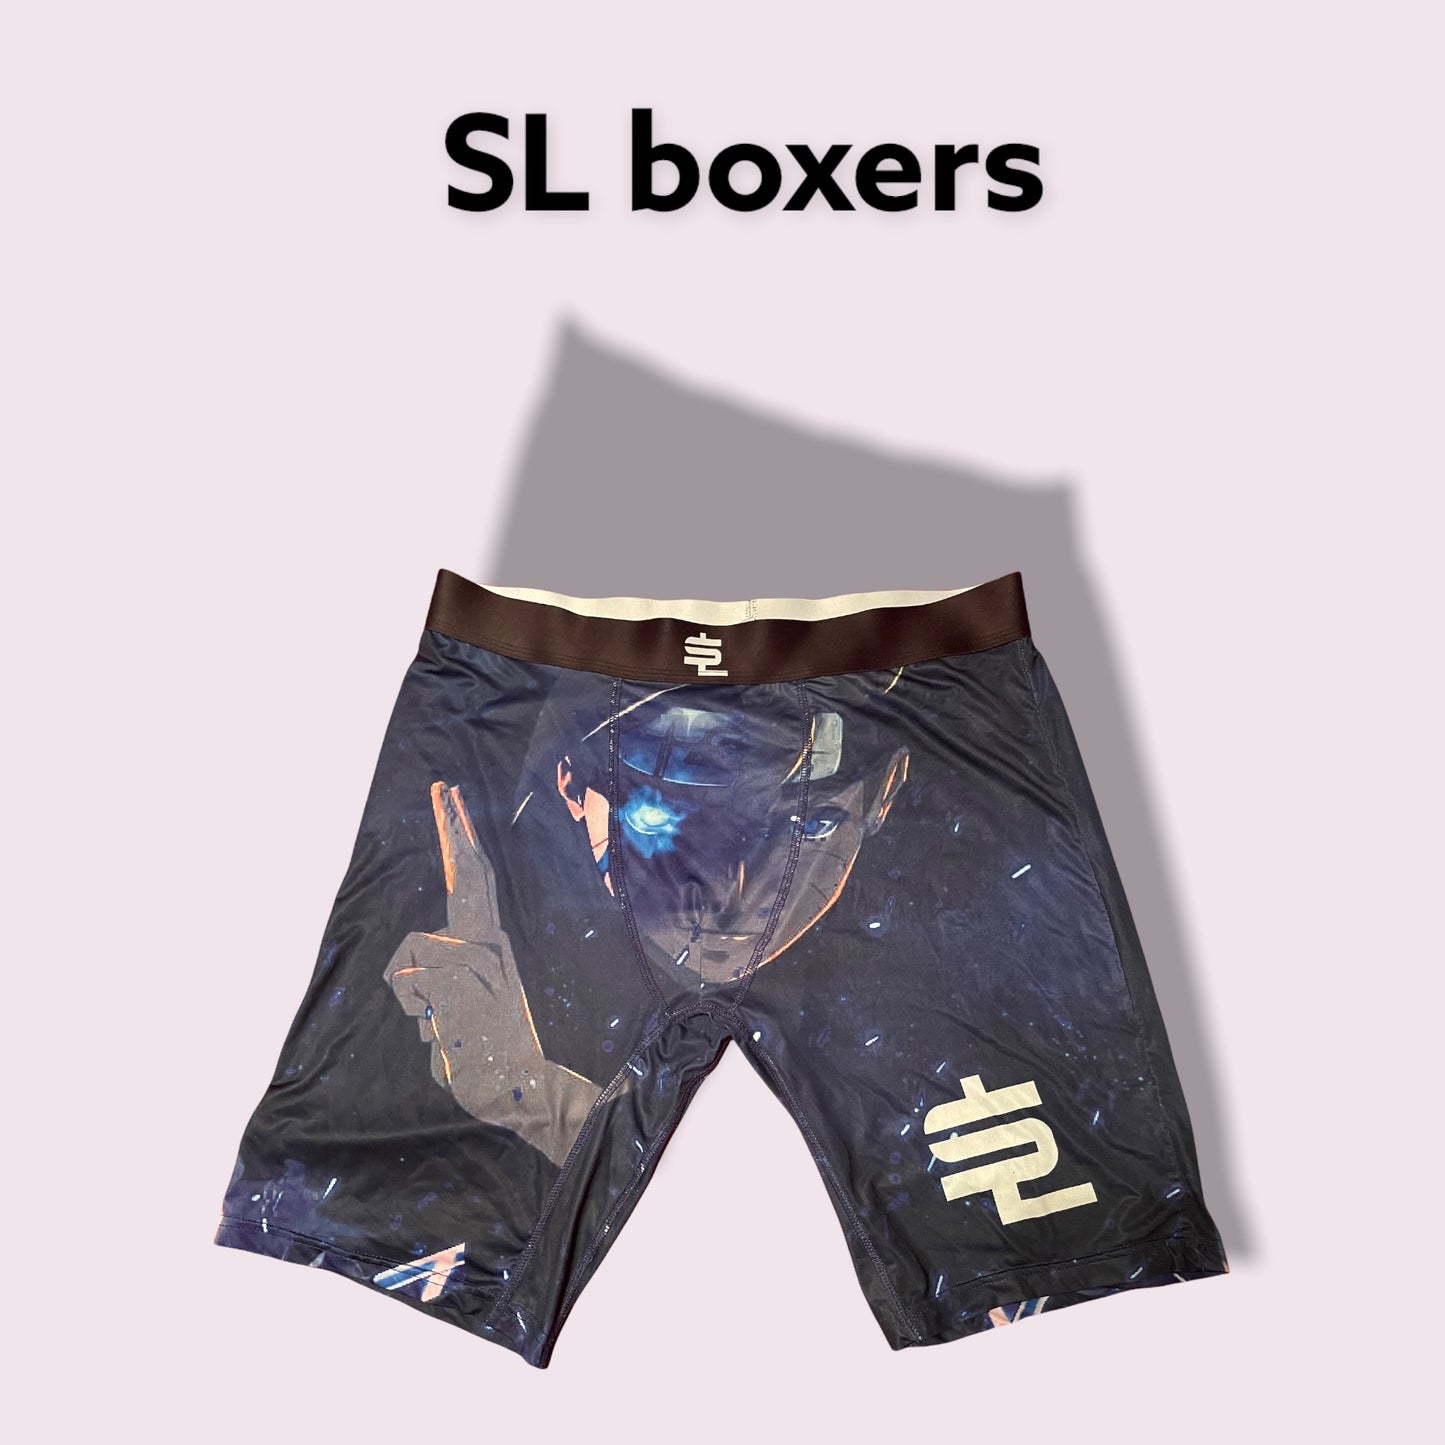 SL boxers